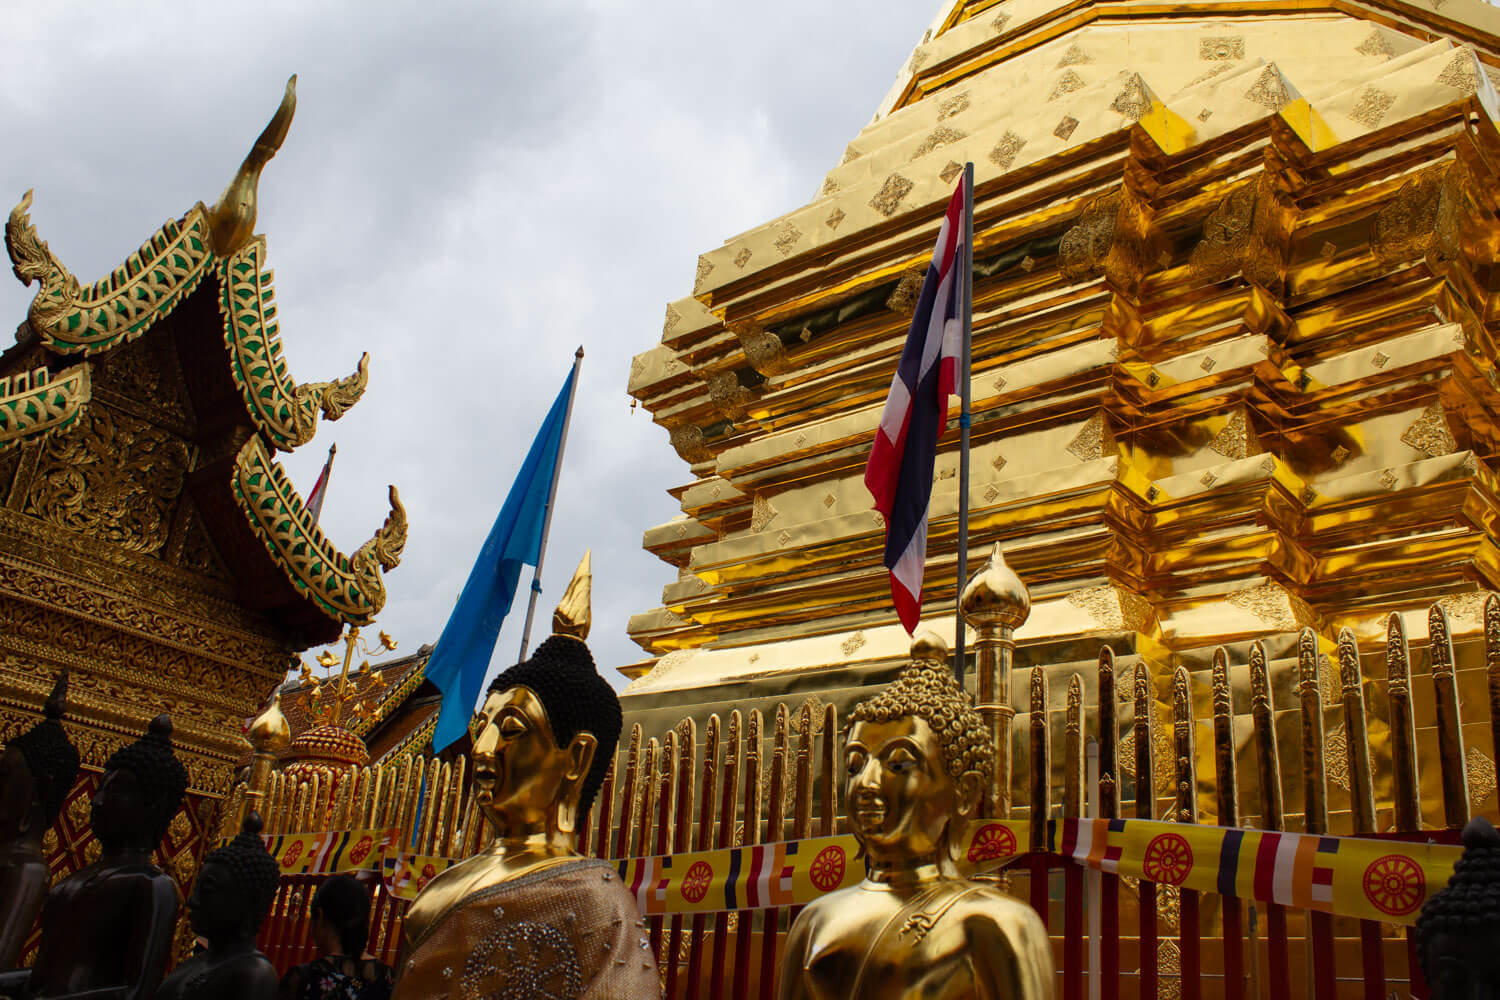 タイ おすすめ 寺